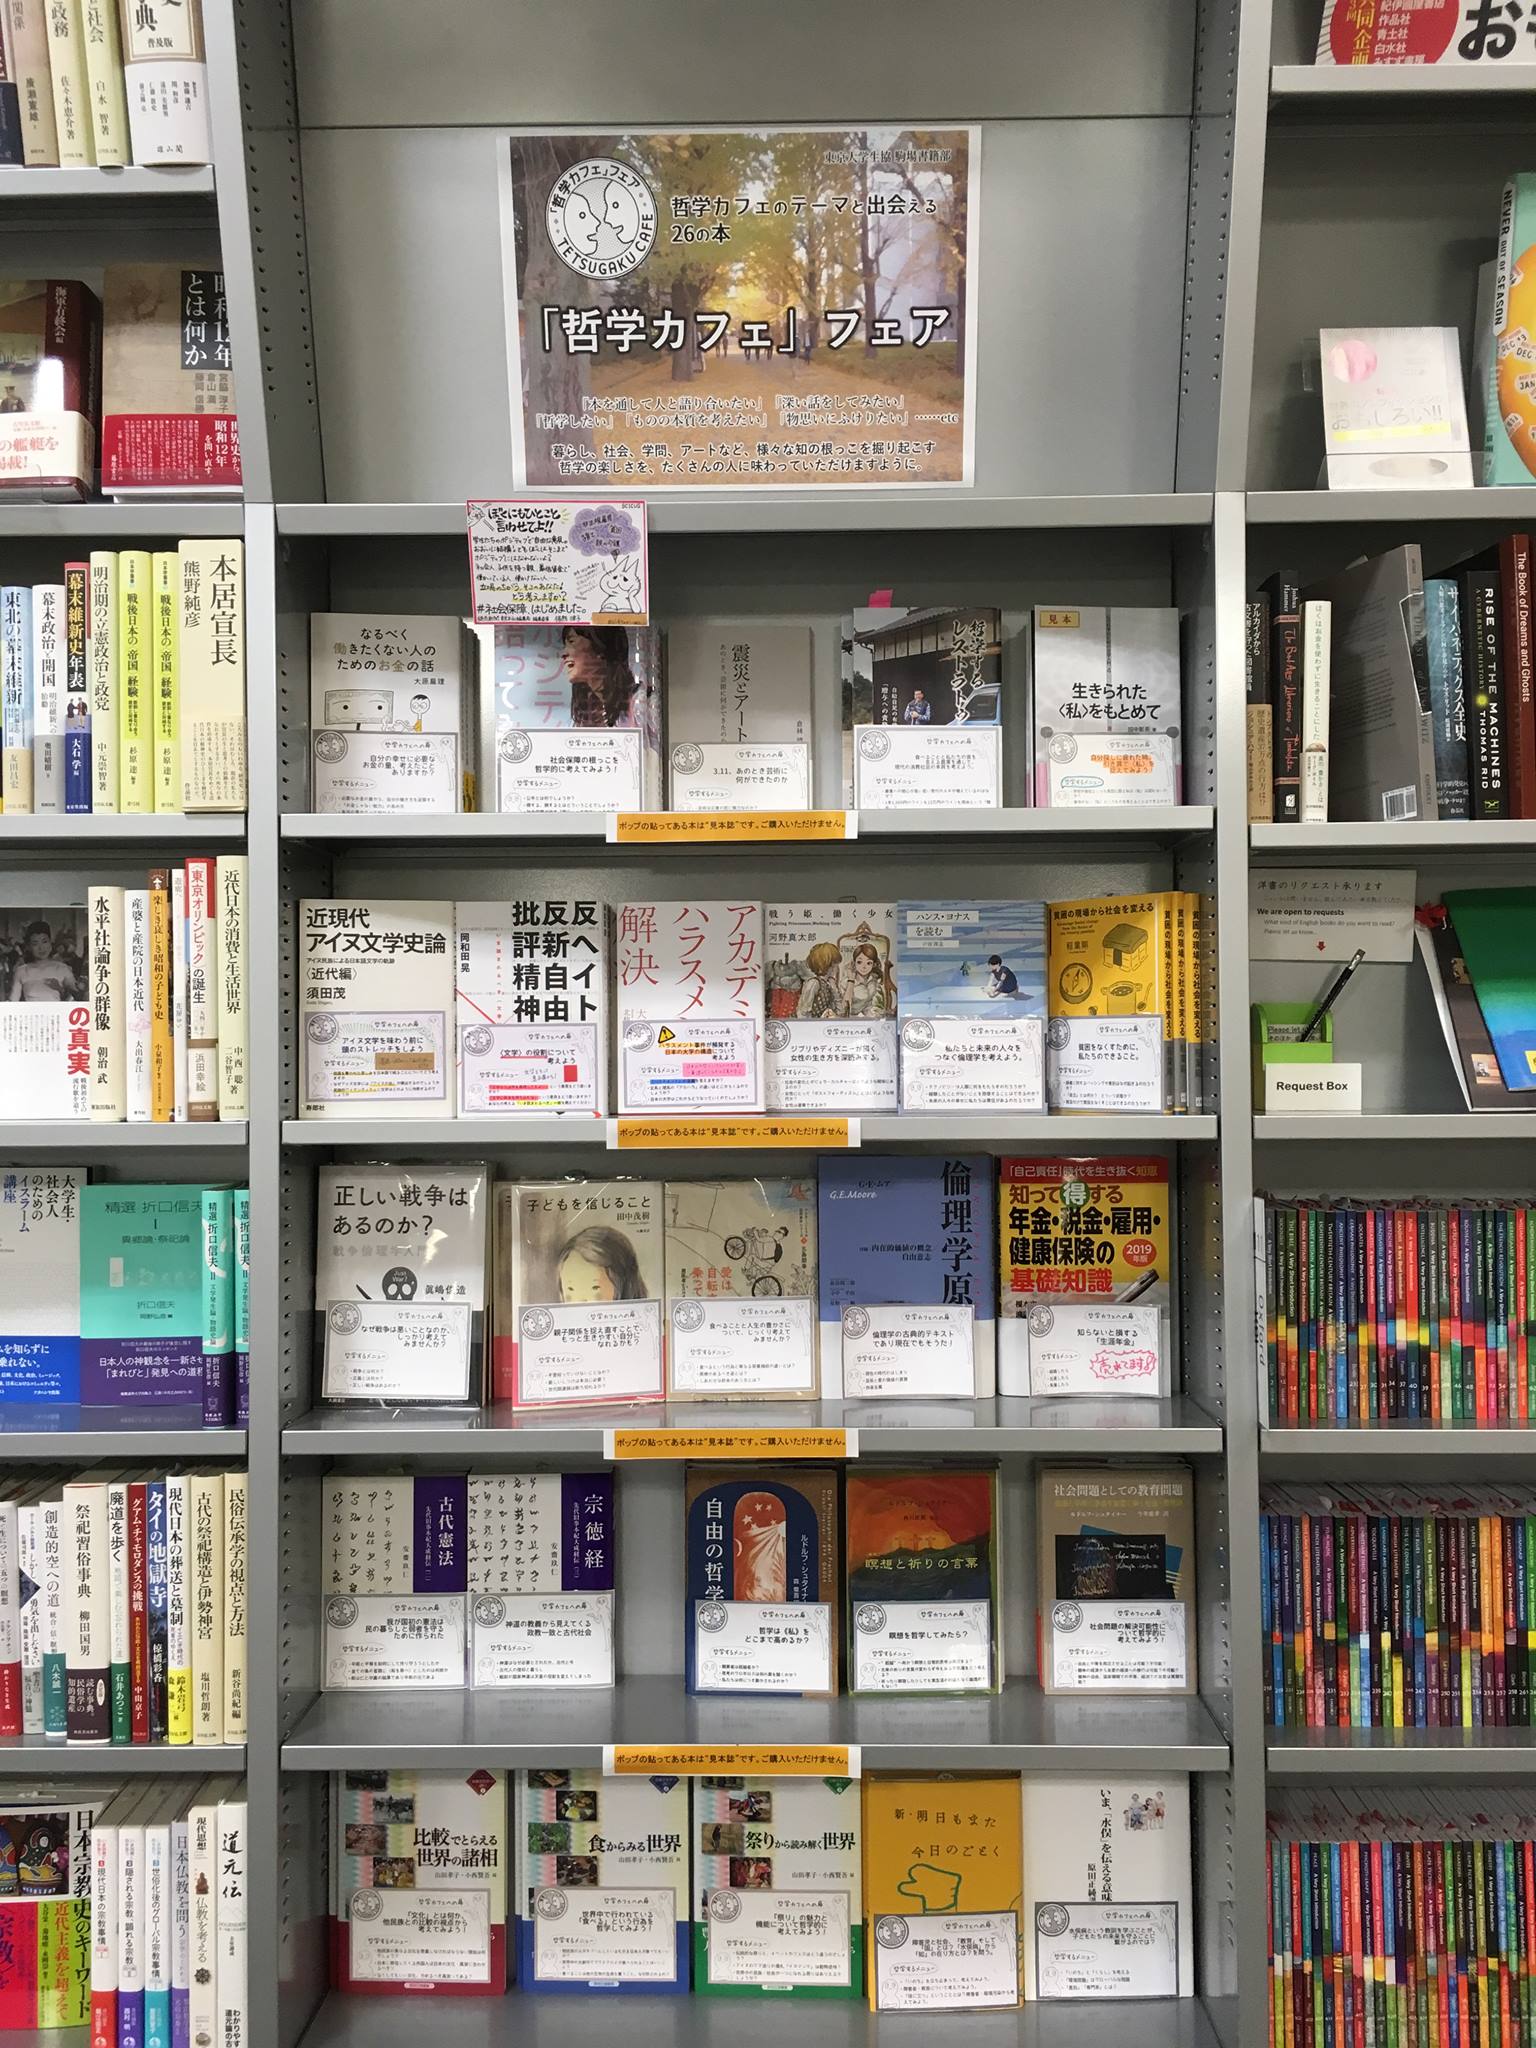 東京大学生協 駒場書籍部ブックフェア『哲学カフェのテーマと出会える26の本』第2回